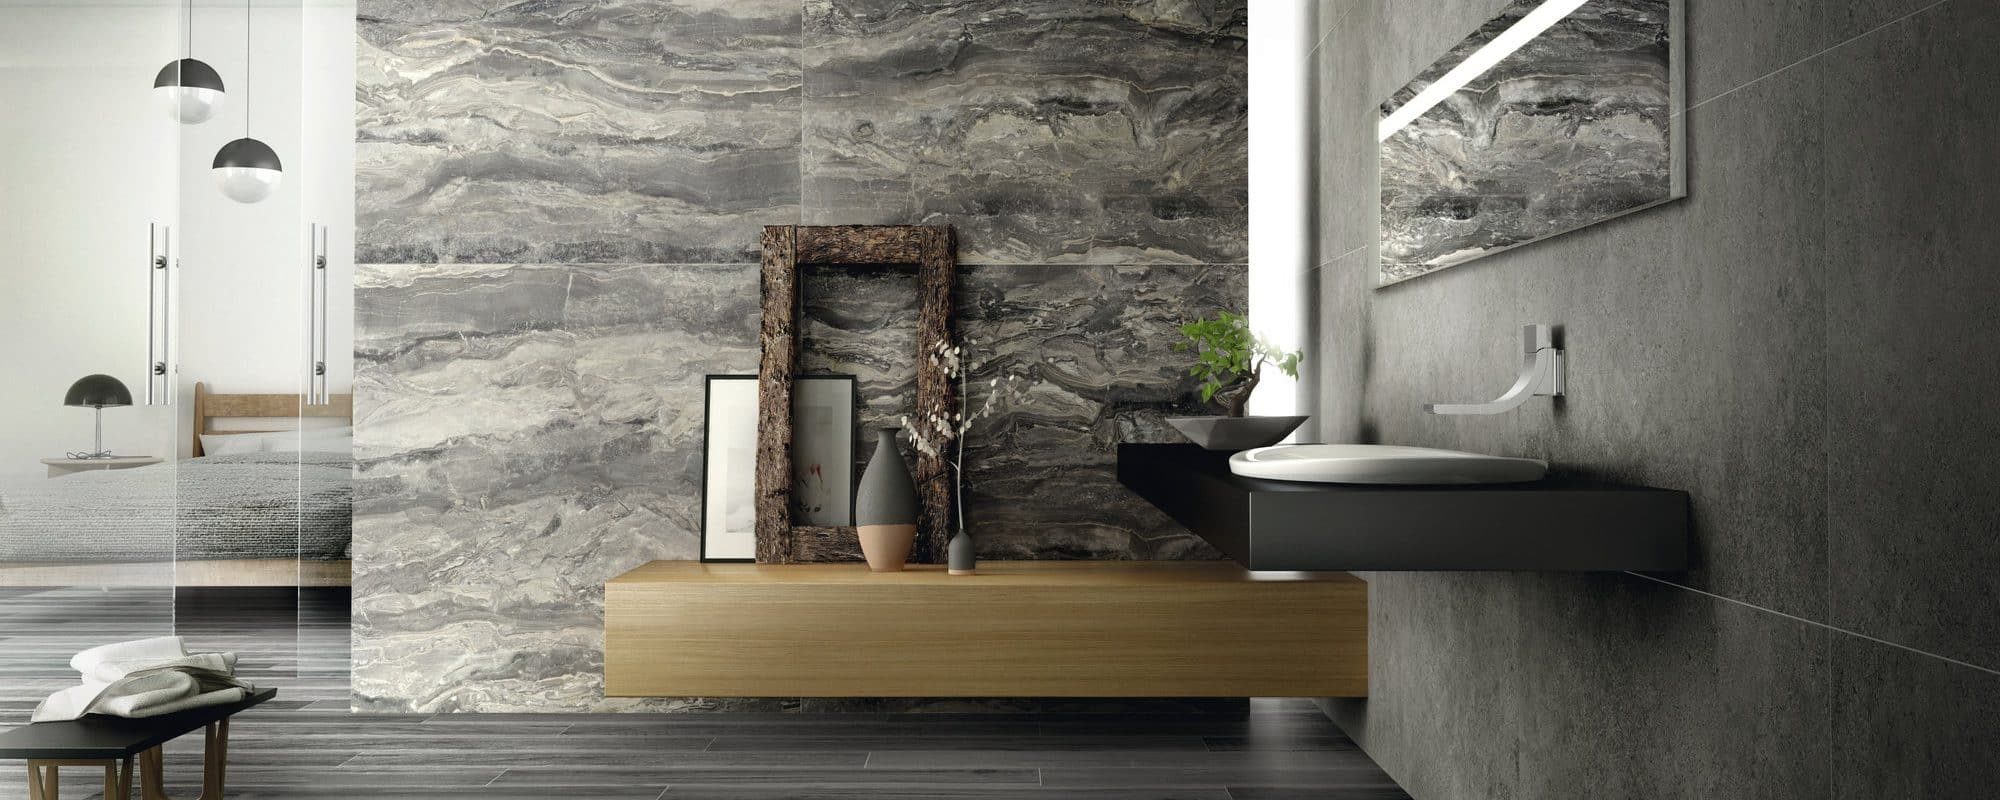 WABI SABI wood effect porcelain bathroom tiles uk slider 3